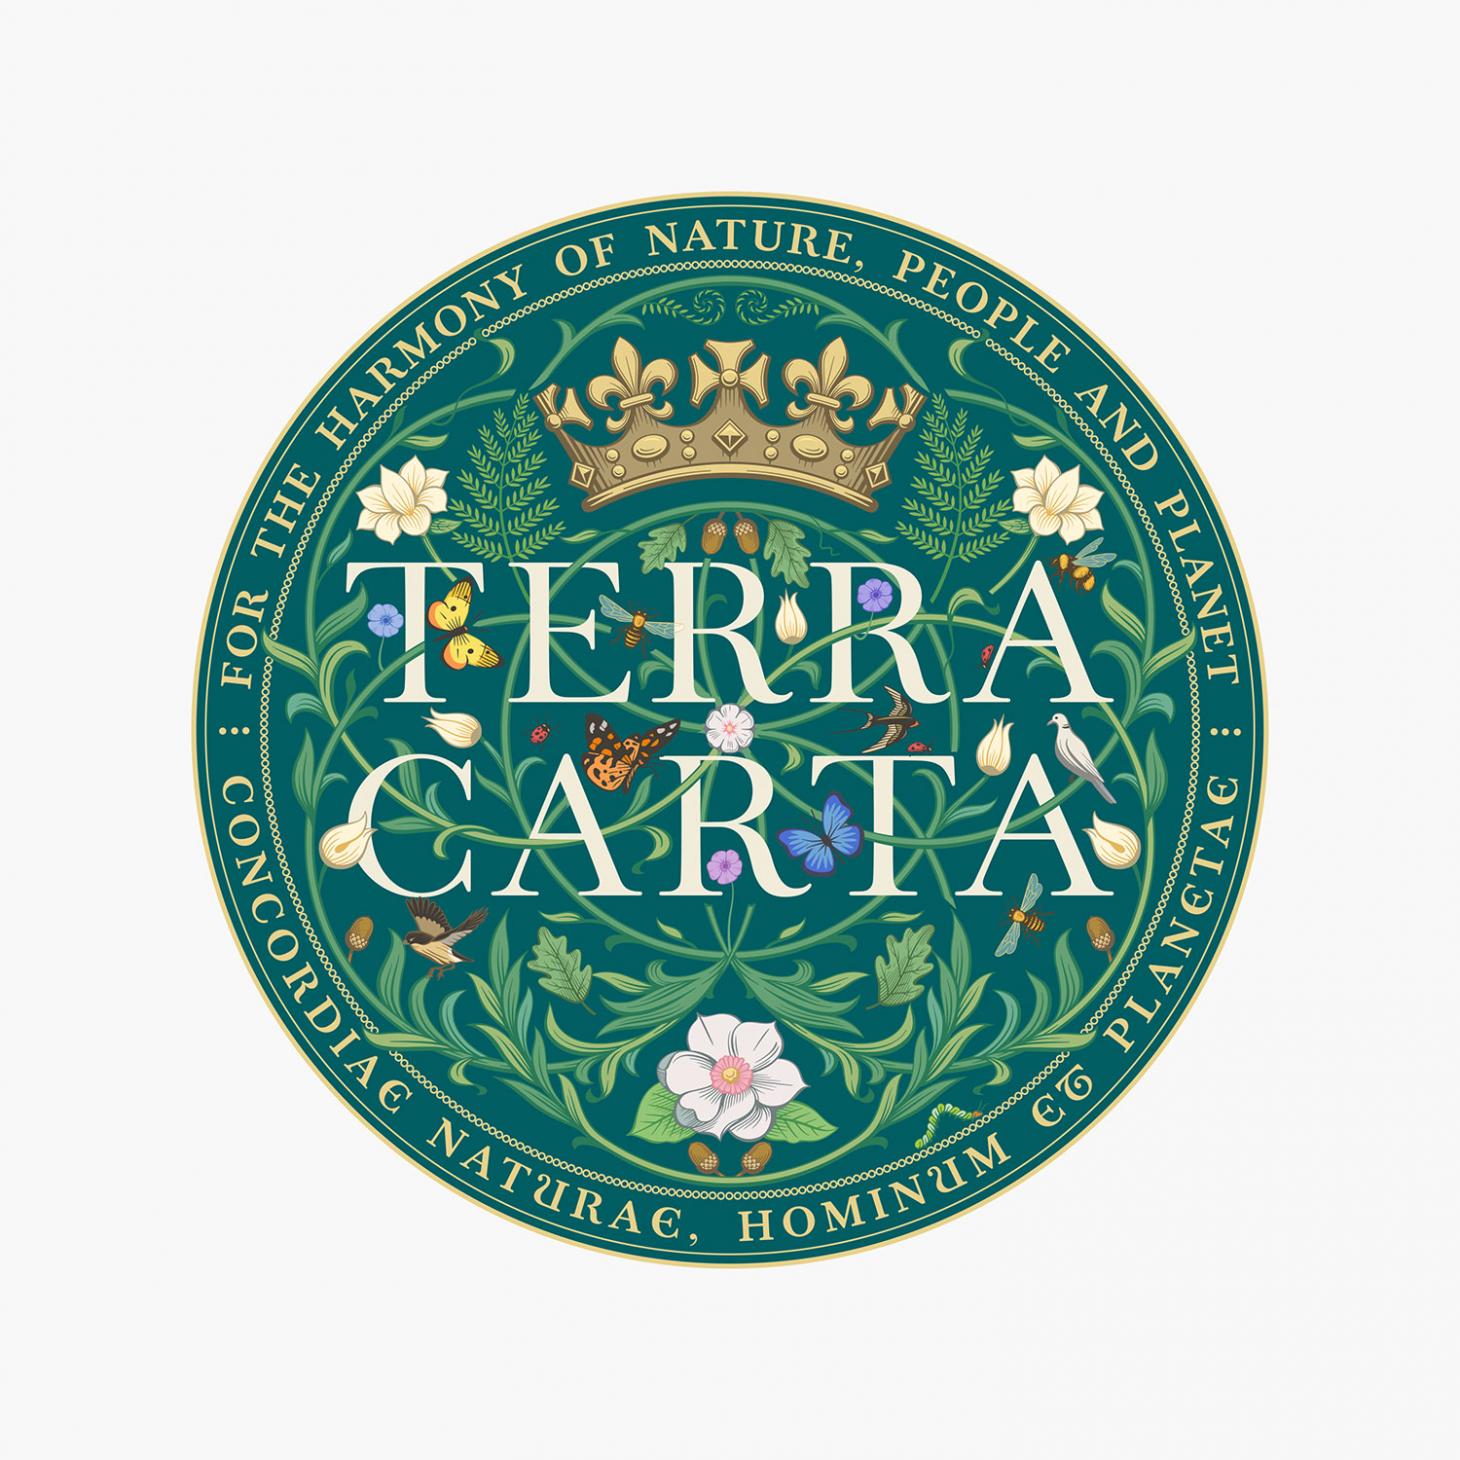 Terra Carta digital seal